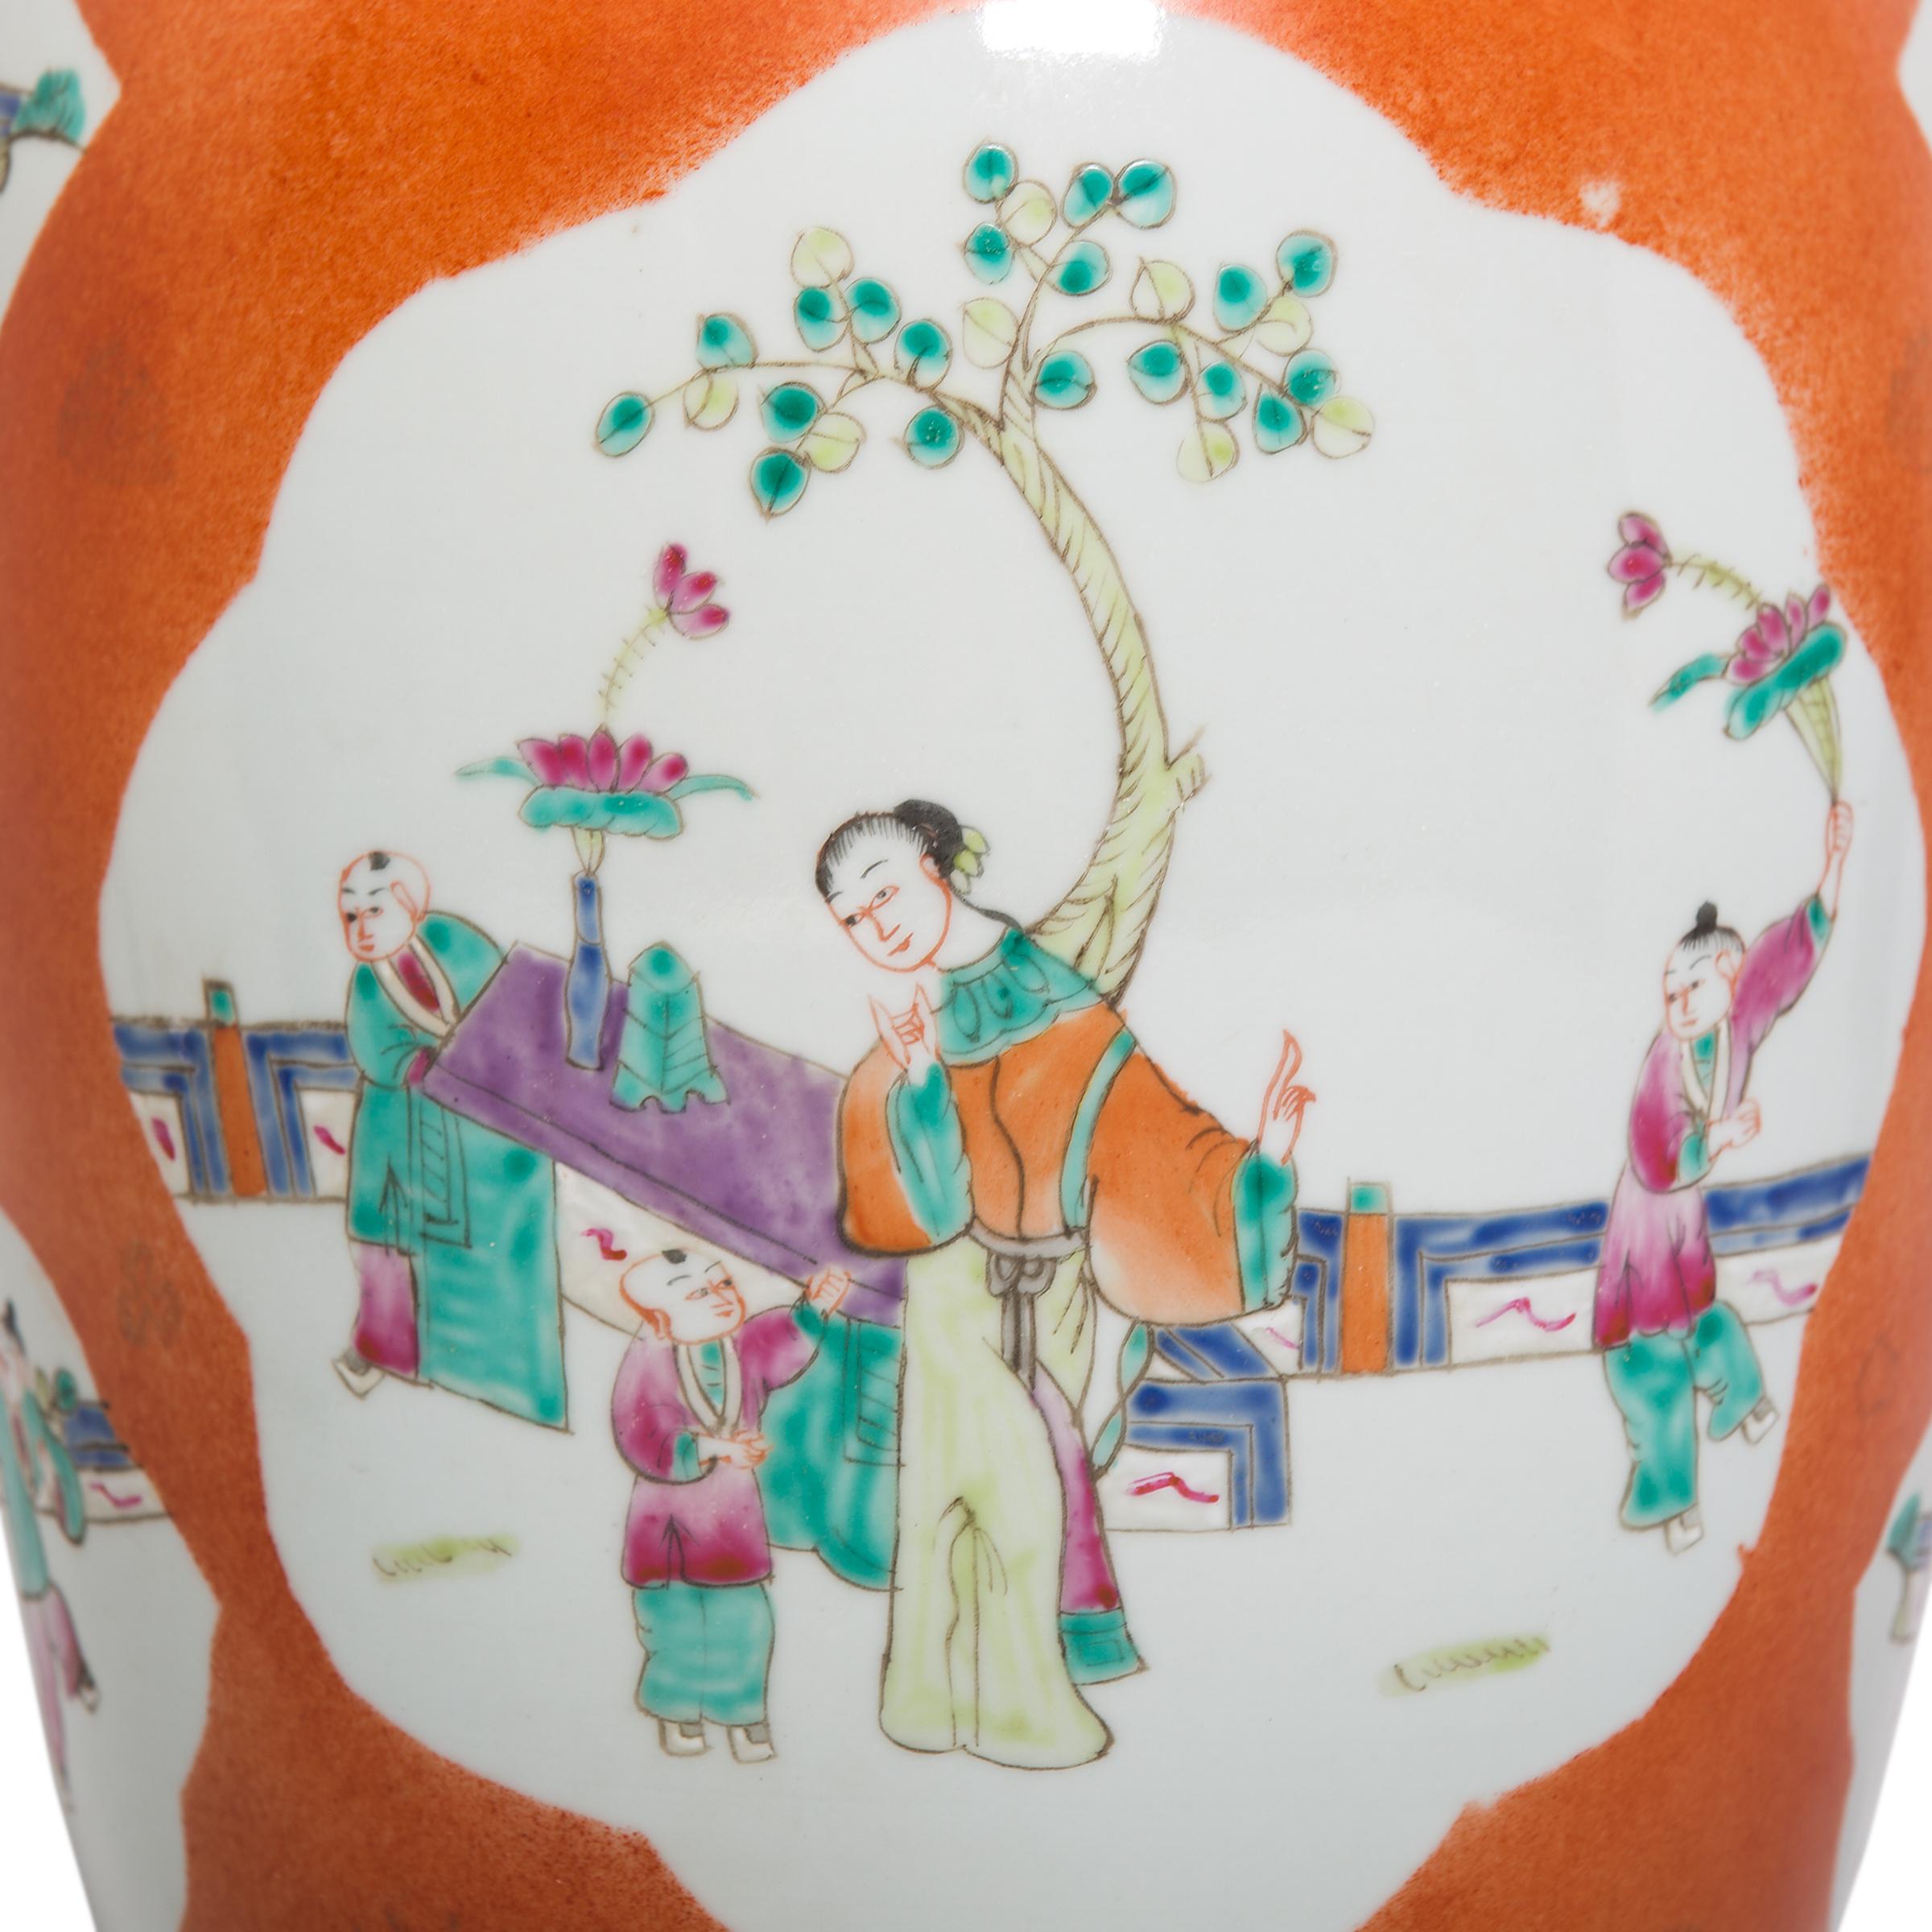 Diese Vase ist ein perfektes Beispiel für dauerhafte chinesische Symbolik und Design. Die Bediensteten im Garten wachen über die Jungen, die mit Lotuszweigen, Schmetterlingen und kleinen Charmebällen spielen. Alle diese Bilder sind Wünsche für